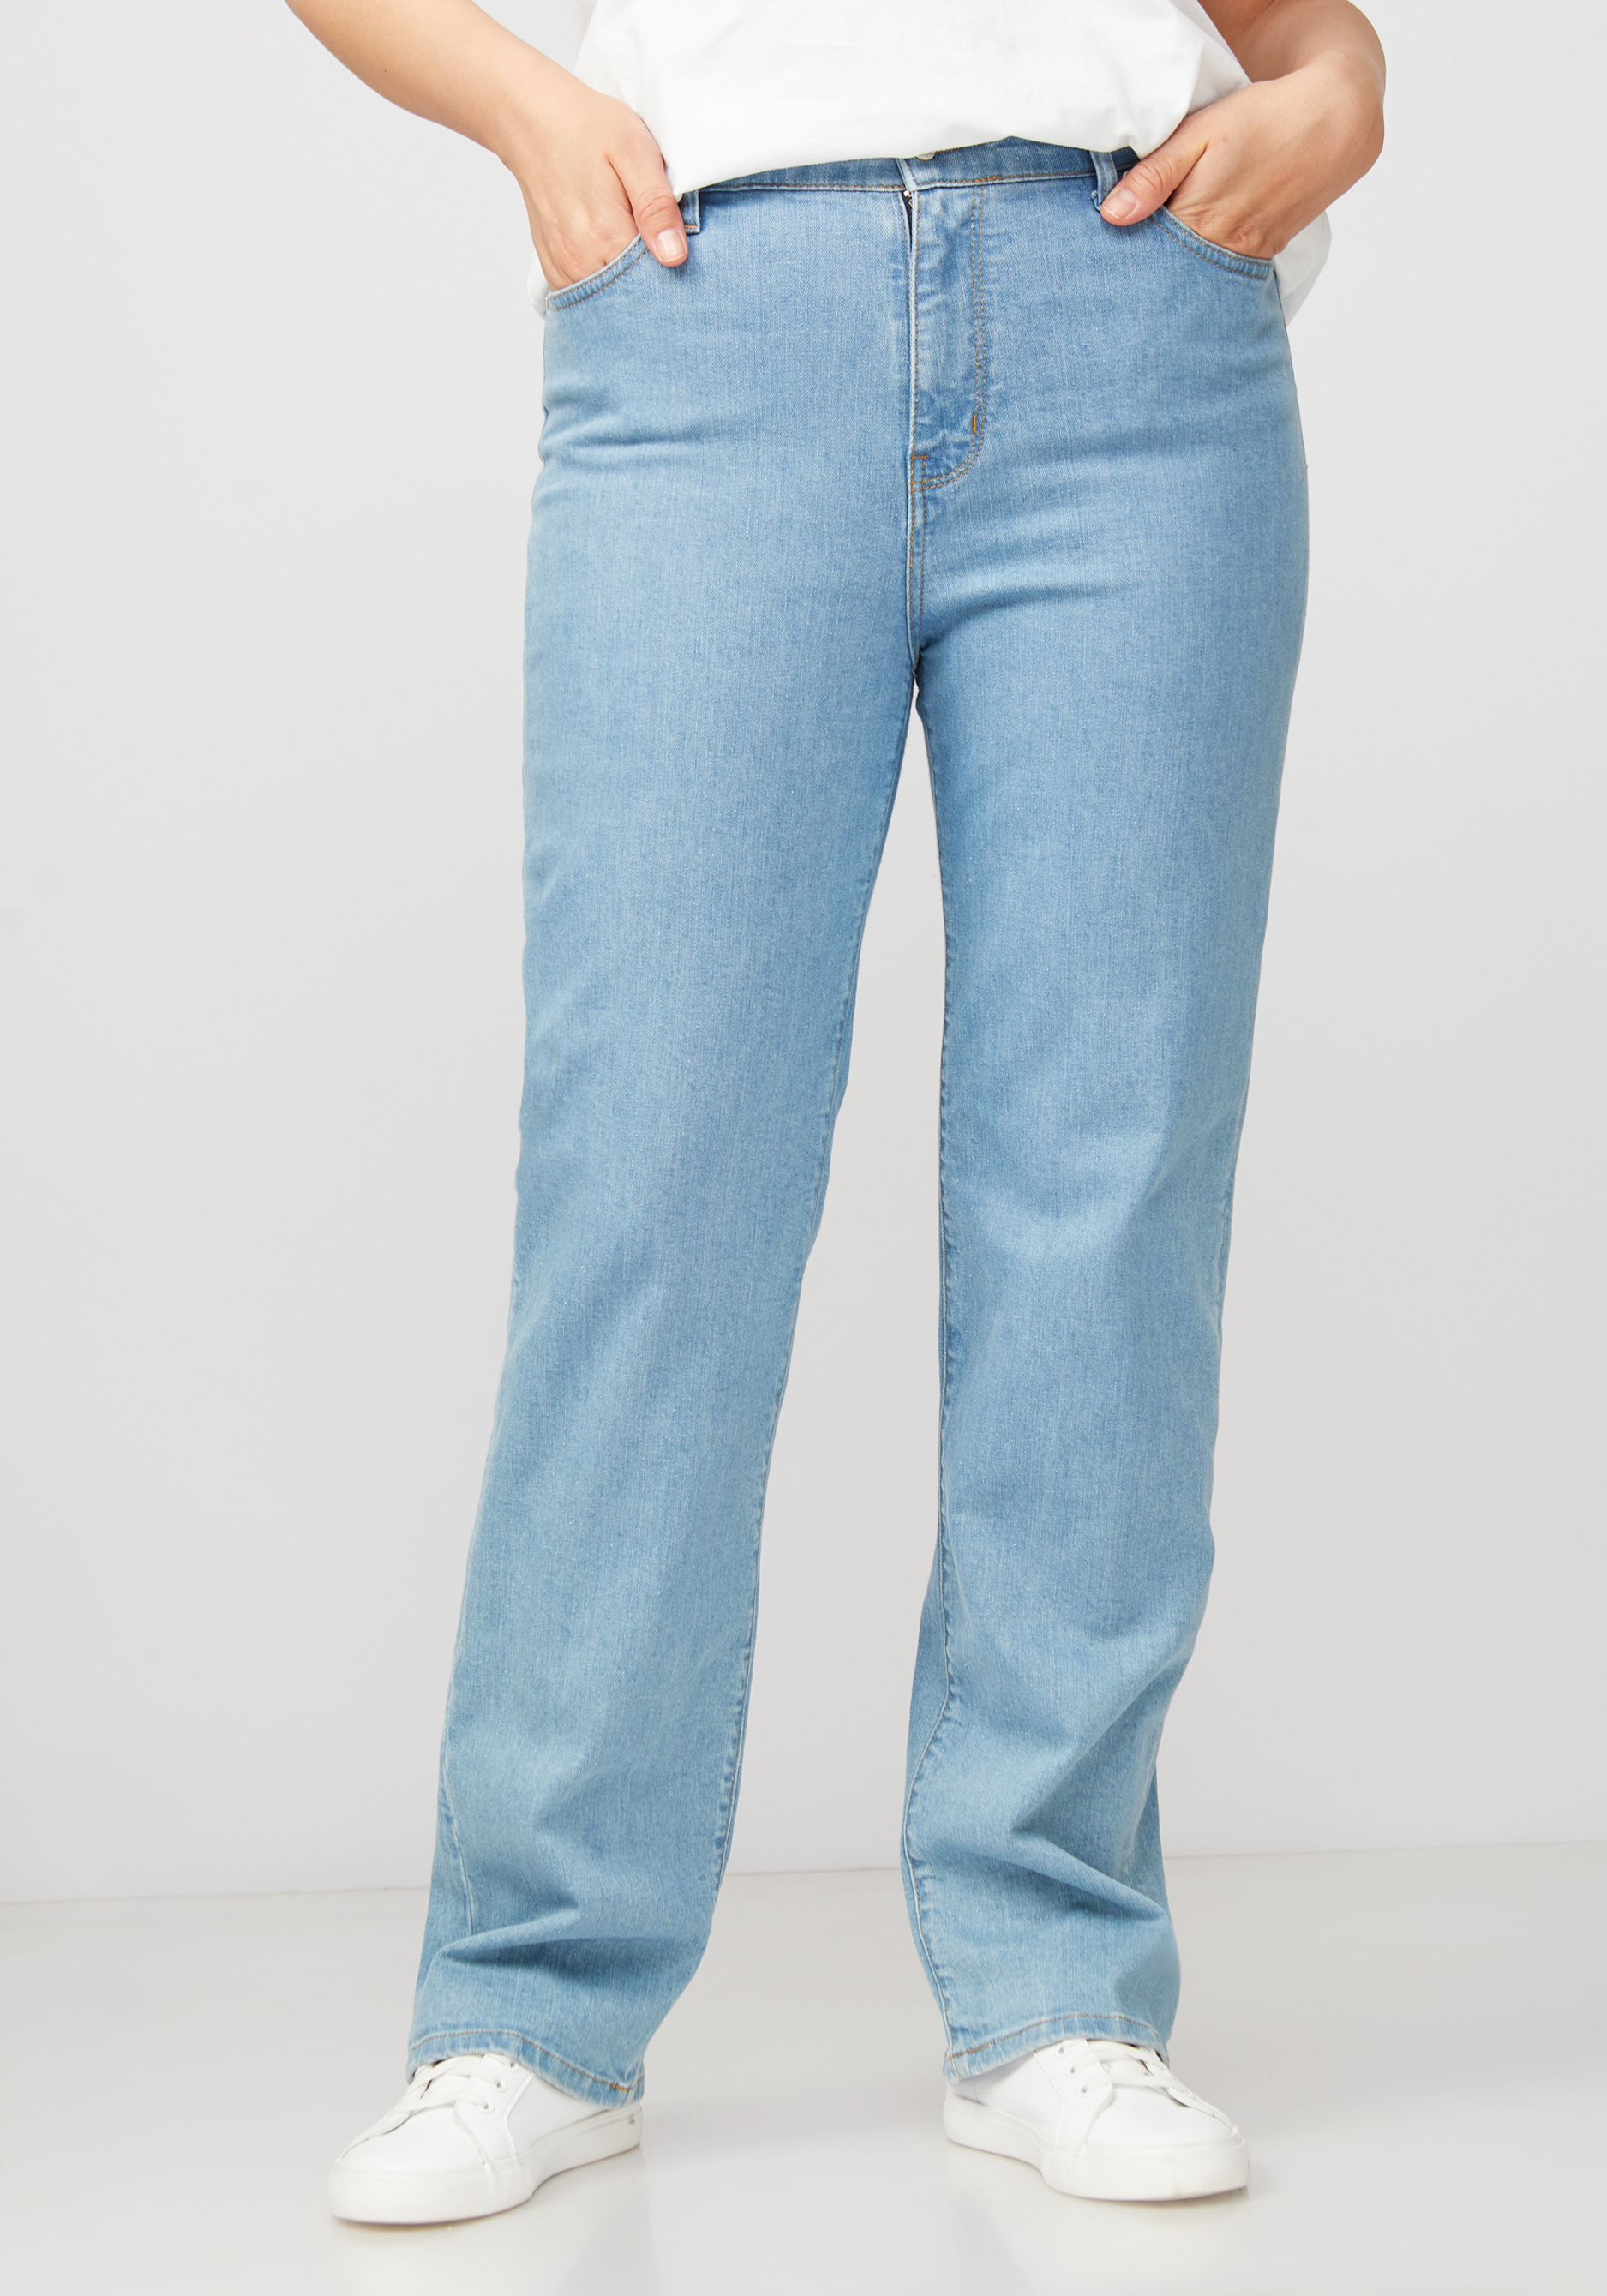 Джинсы с принтом на кармане жен джинсы арт 12 0155 голубой р 25